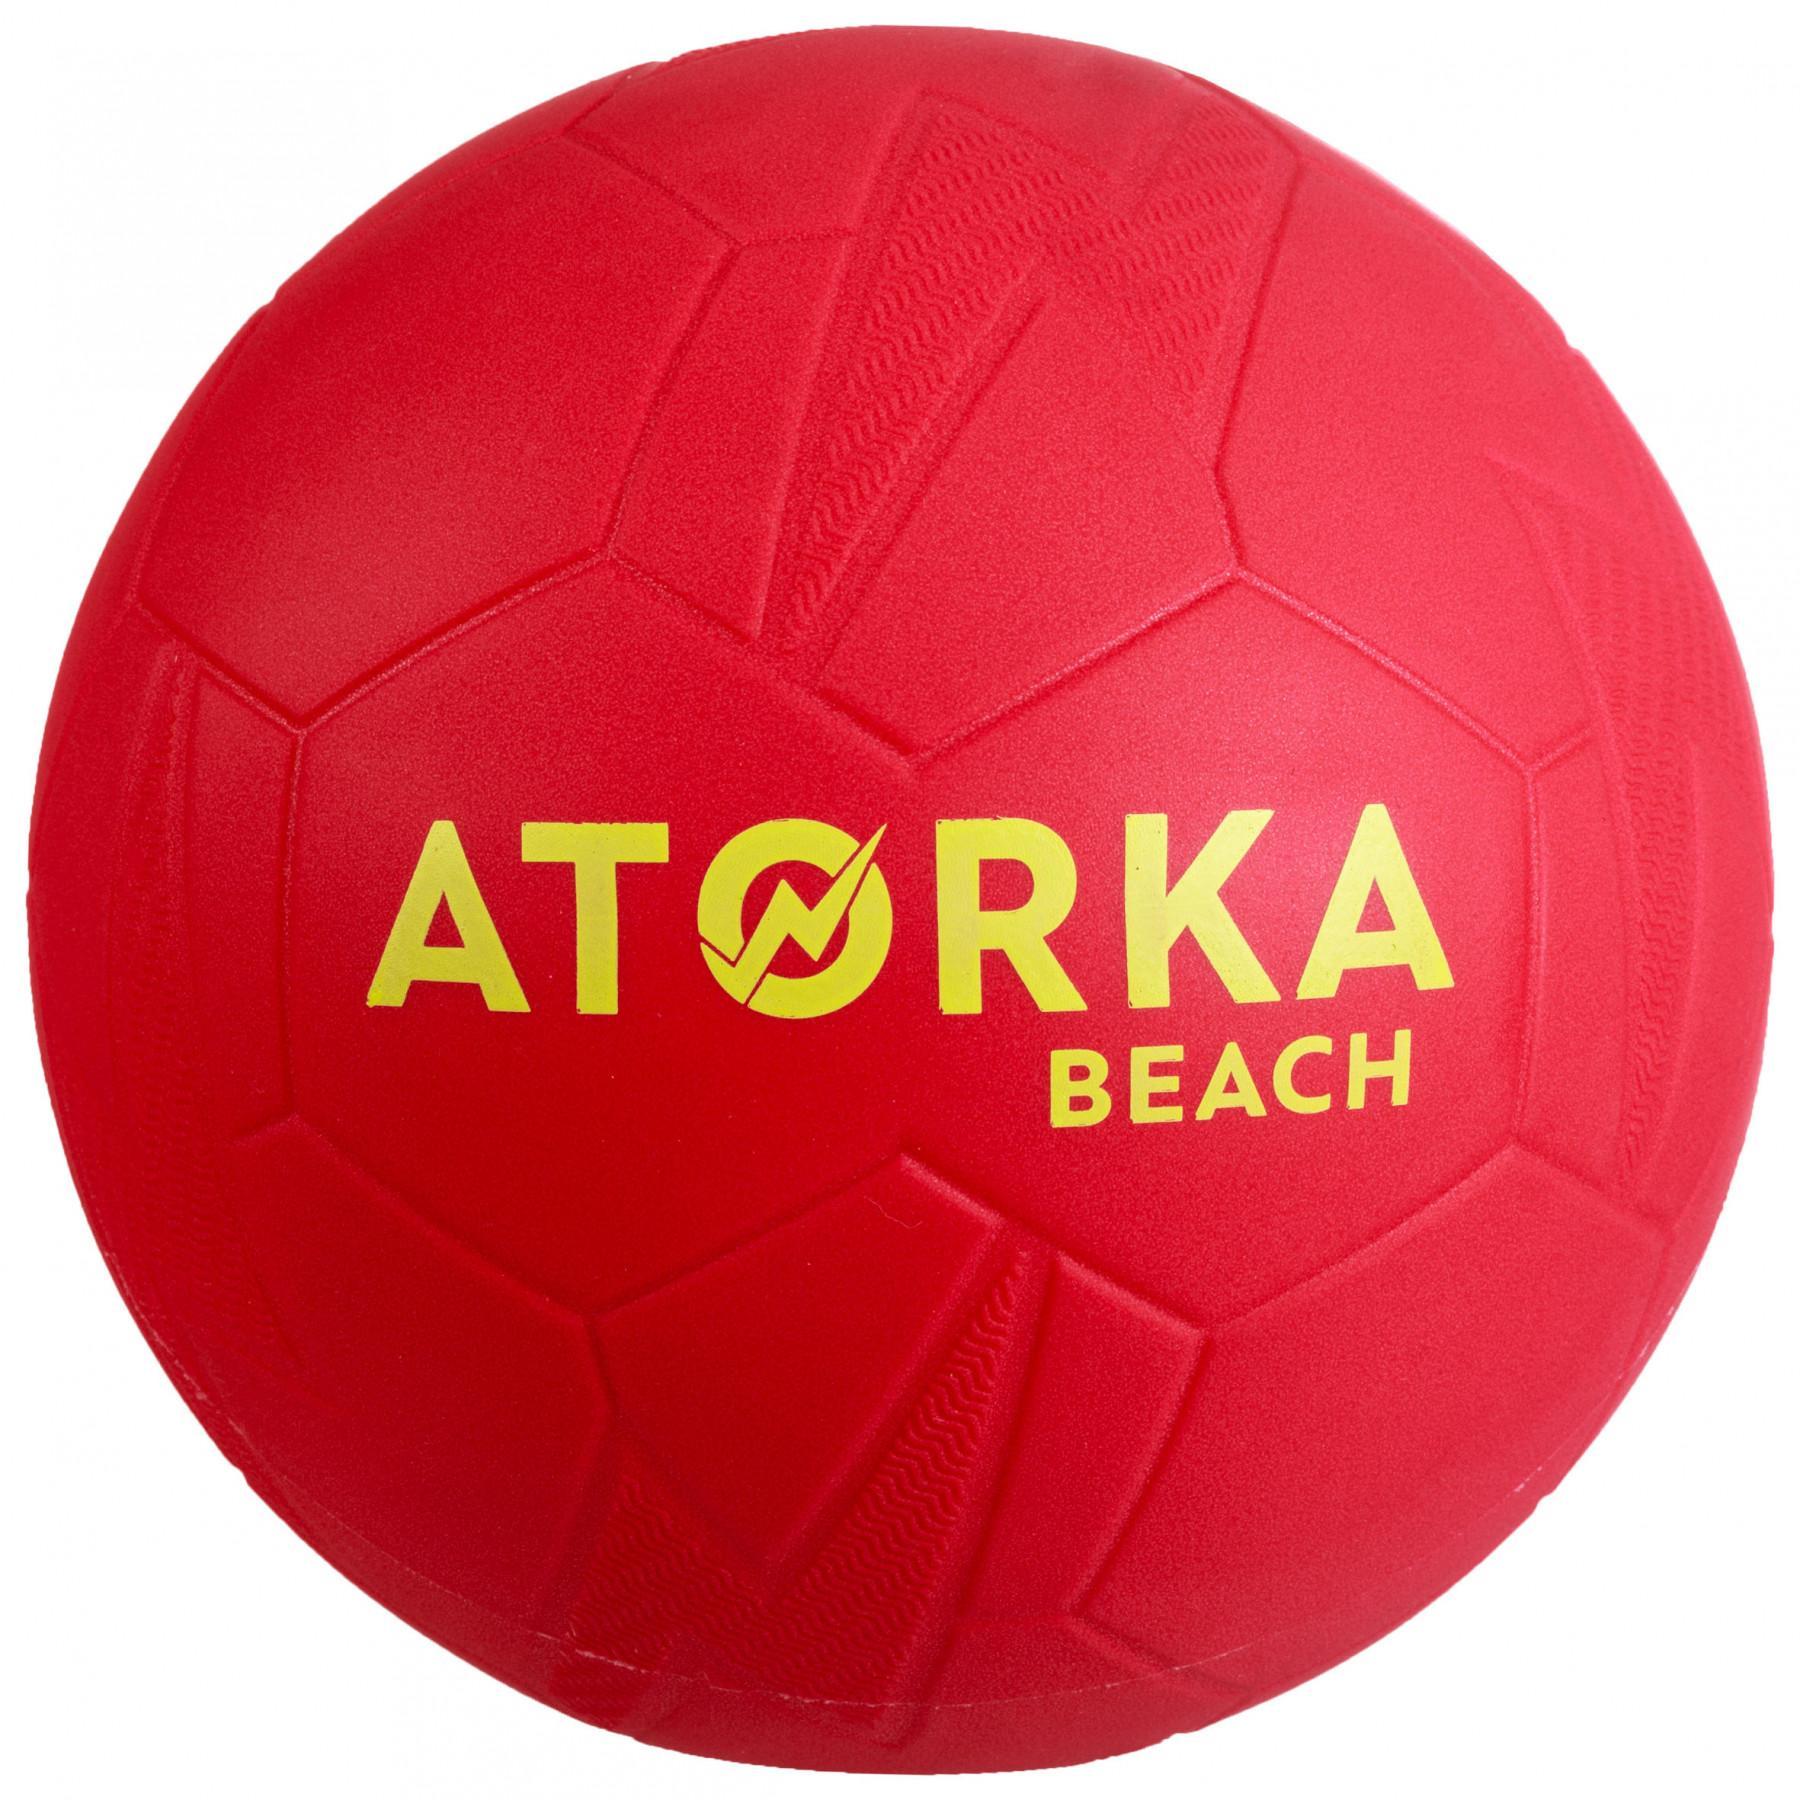 Juego de 5 balones de playa Atorka HB500B